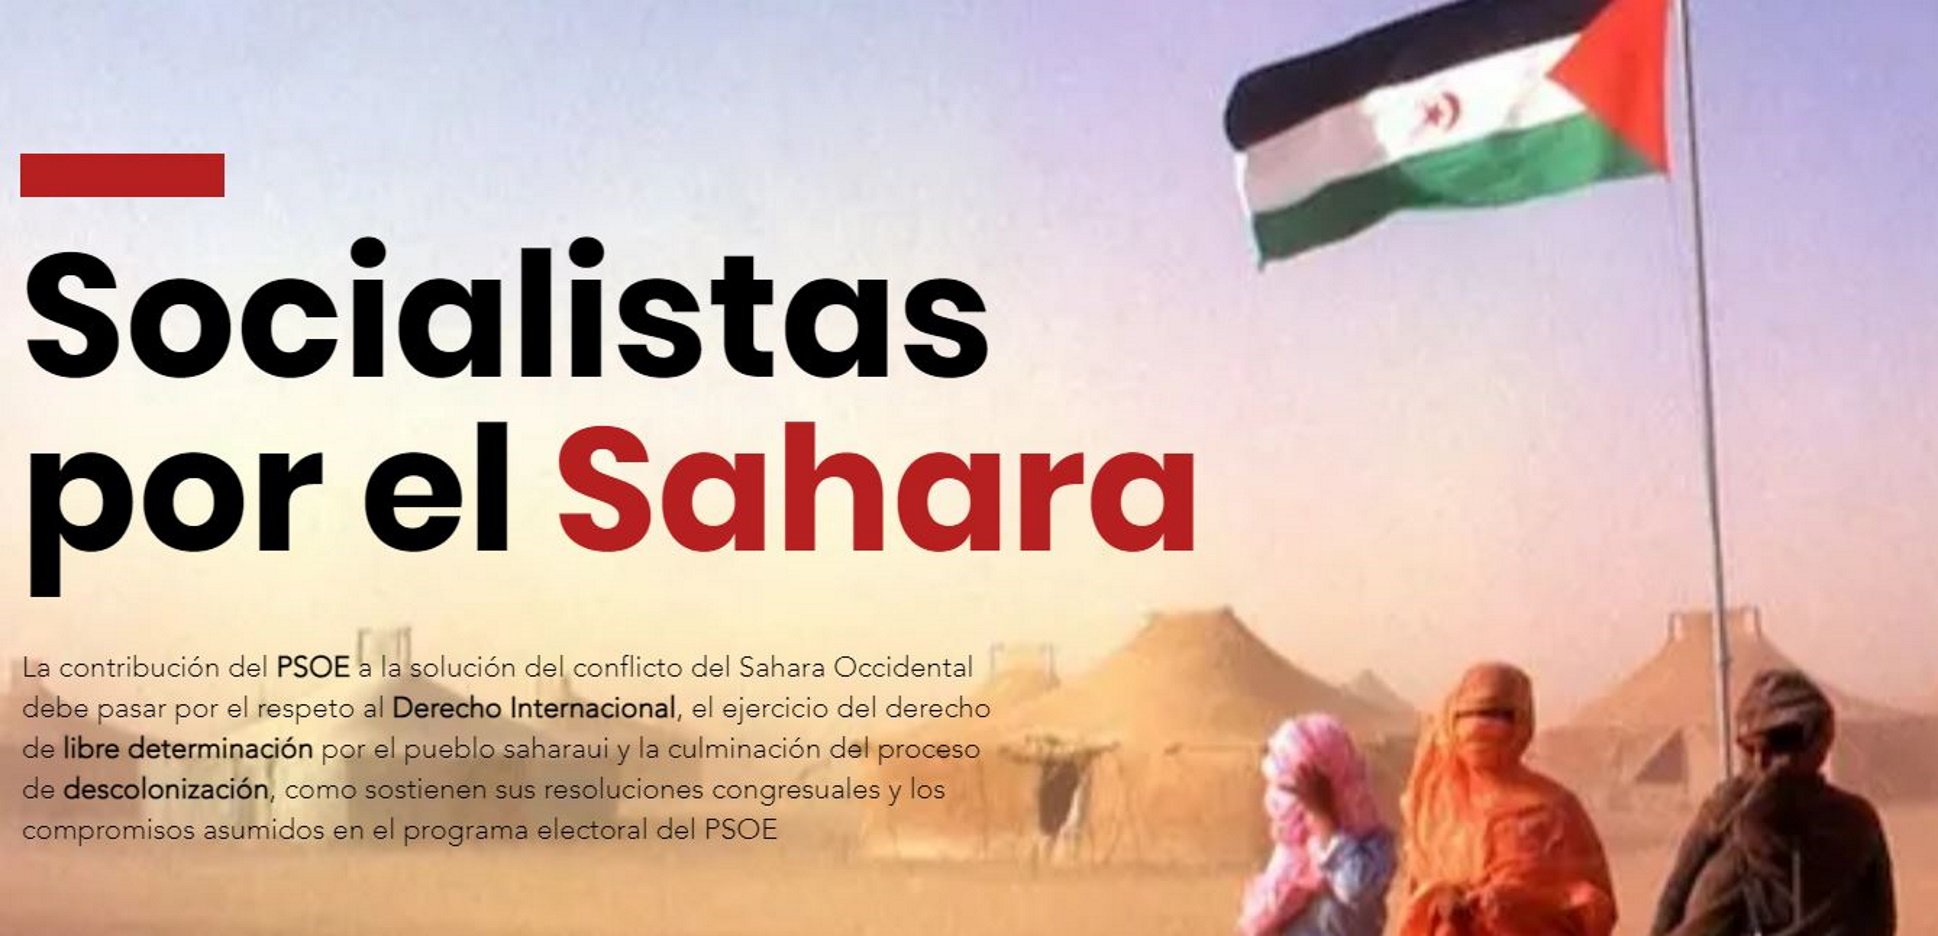 Odón Elorza y militantes del PSOE se rebelan y crean "Socialistas por el Sáhara"